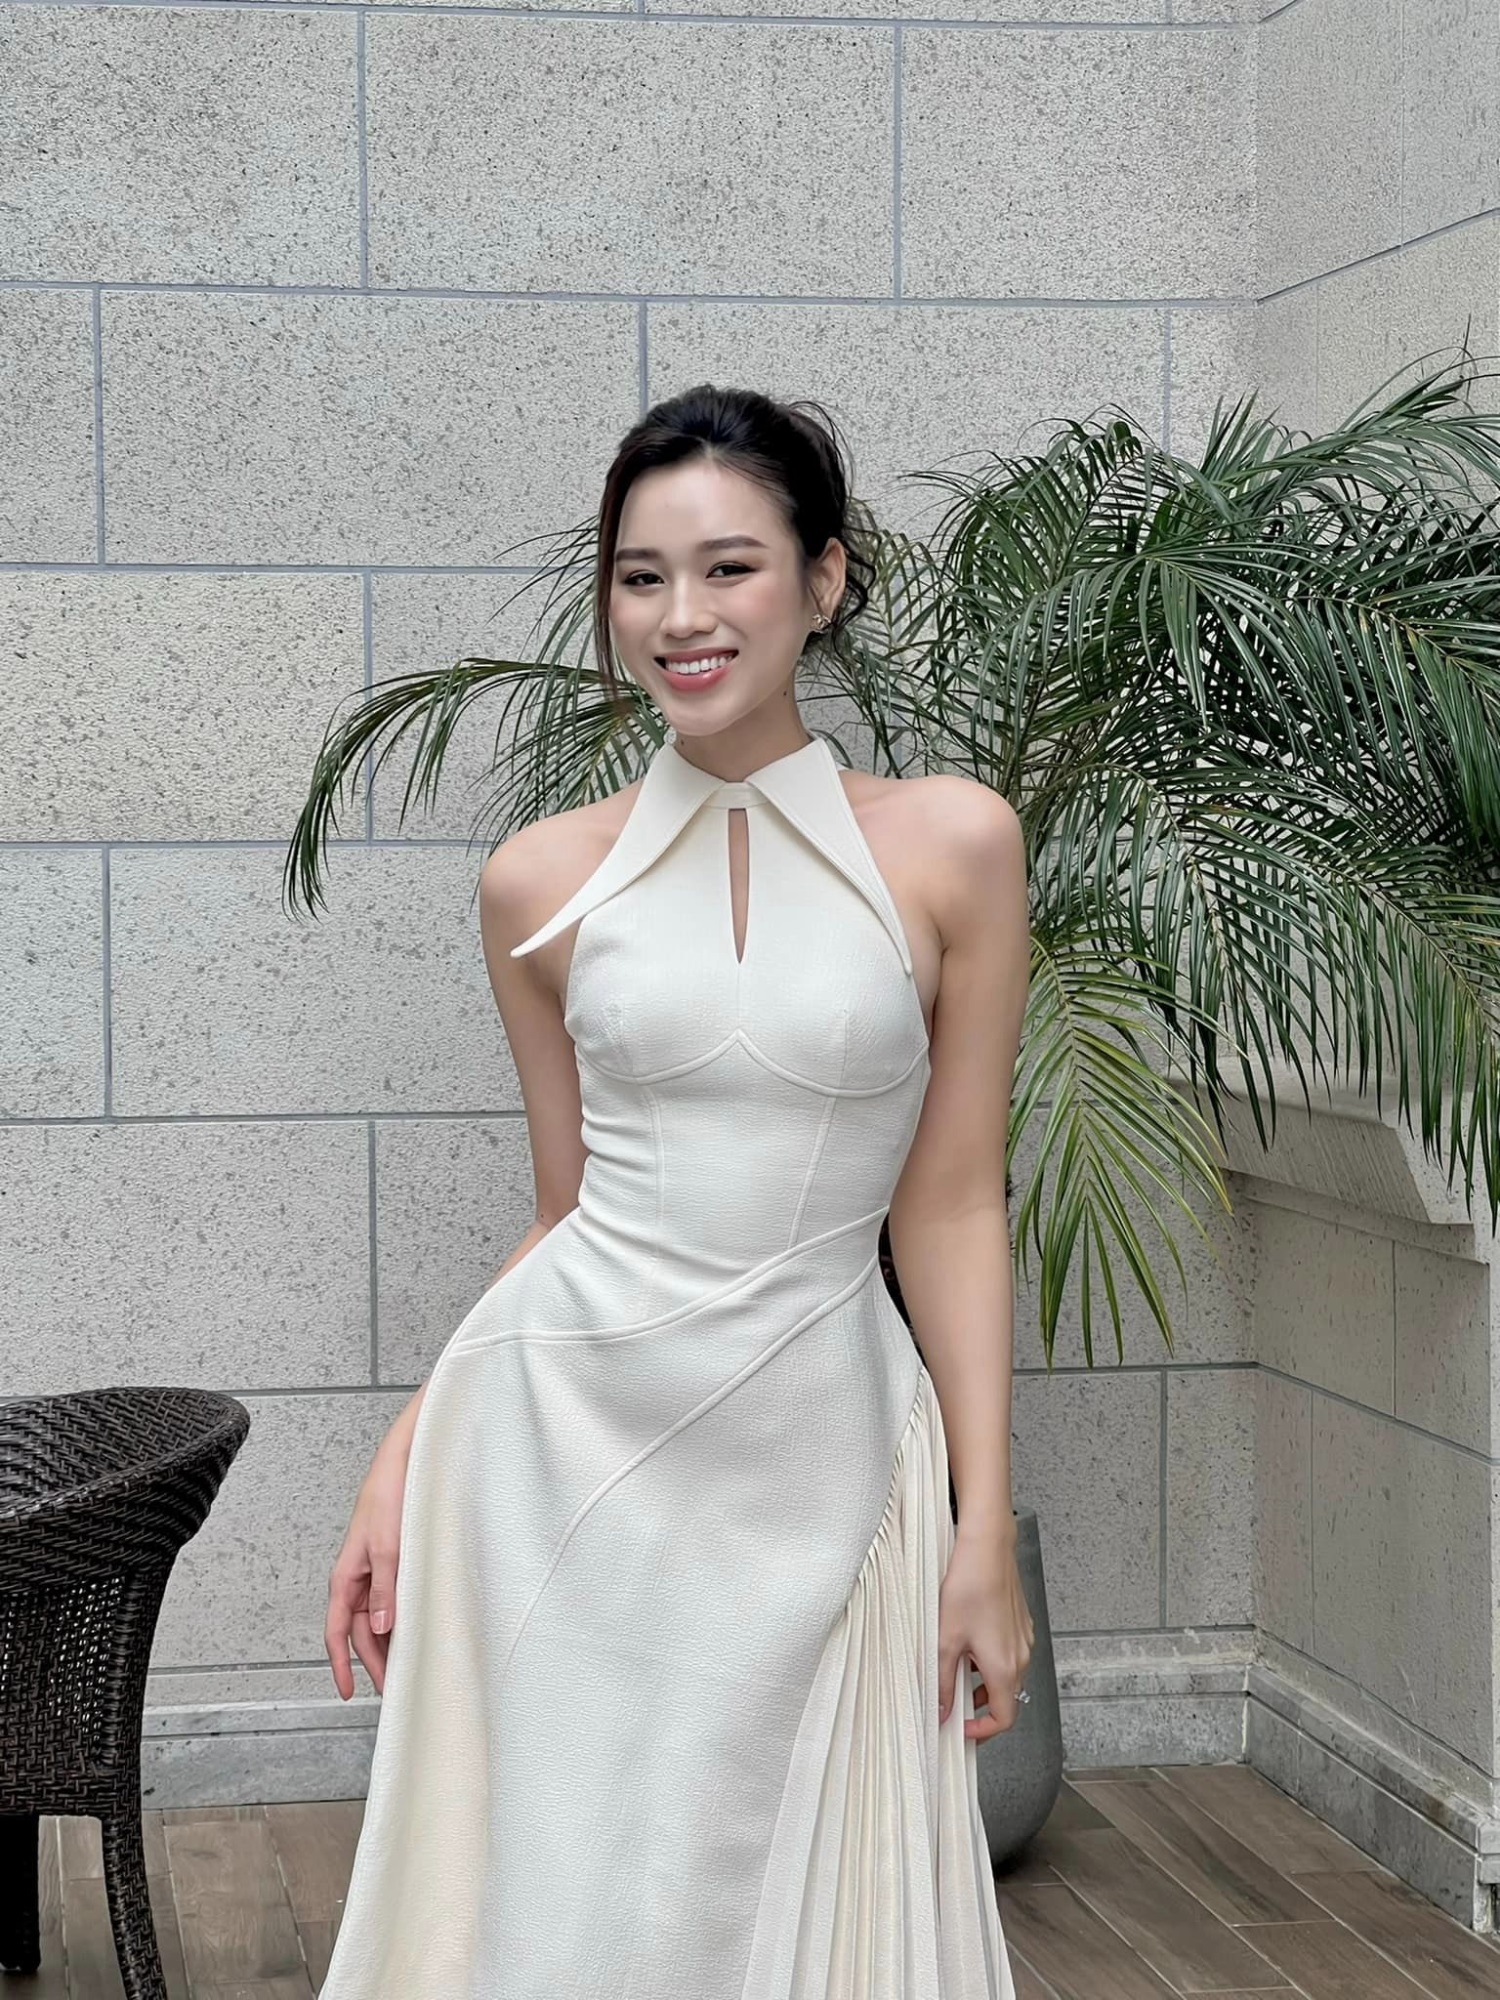 Hoa hậu Đỗ Thị Hà: Muốn làm đại gia của chính mình, chia sẻ kế hoạch sớm theo học chương trình thạc sĩ - Ảnh 5